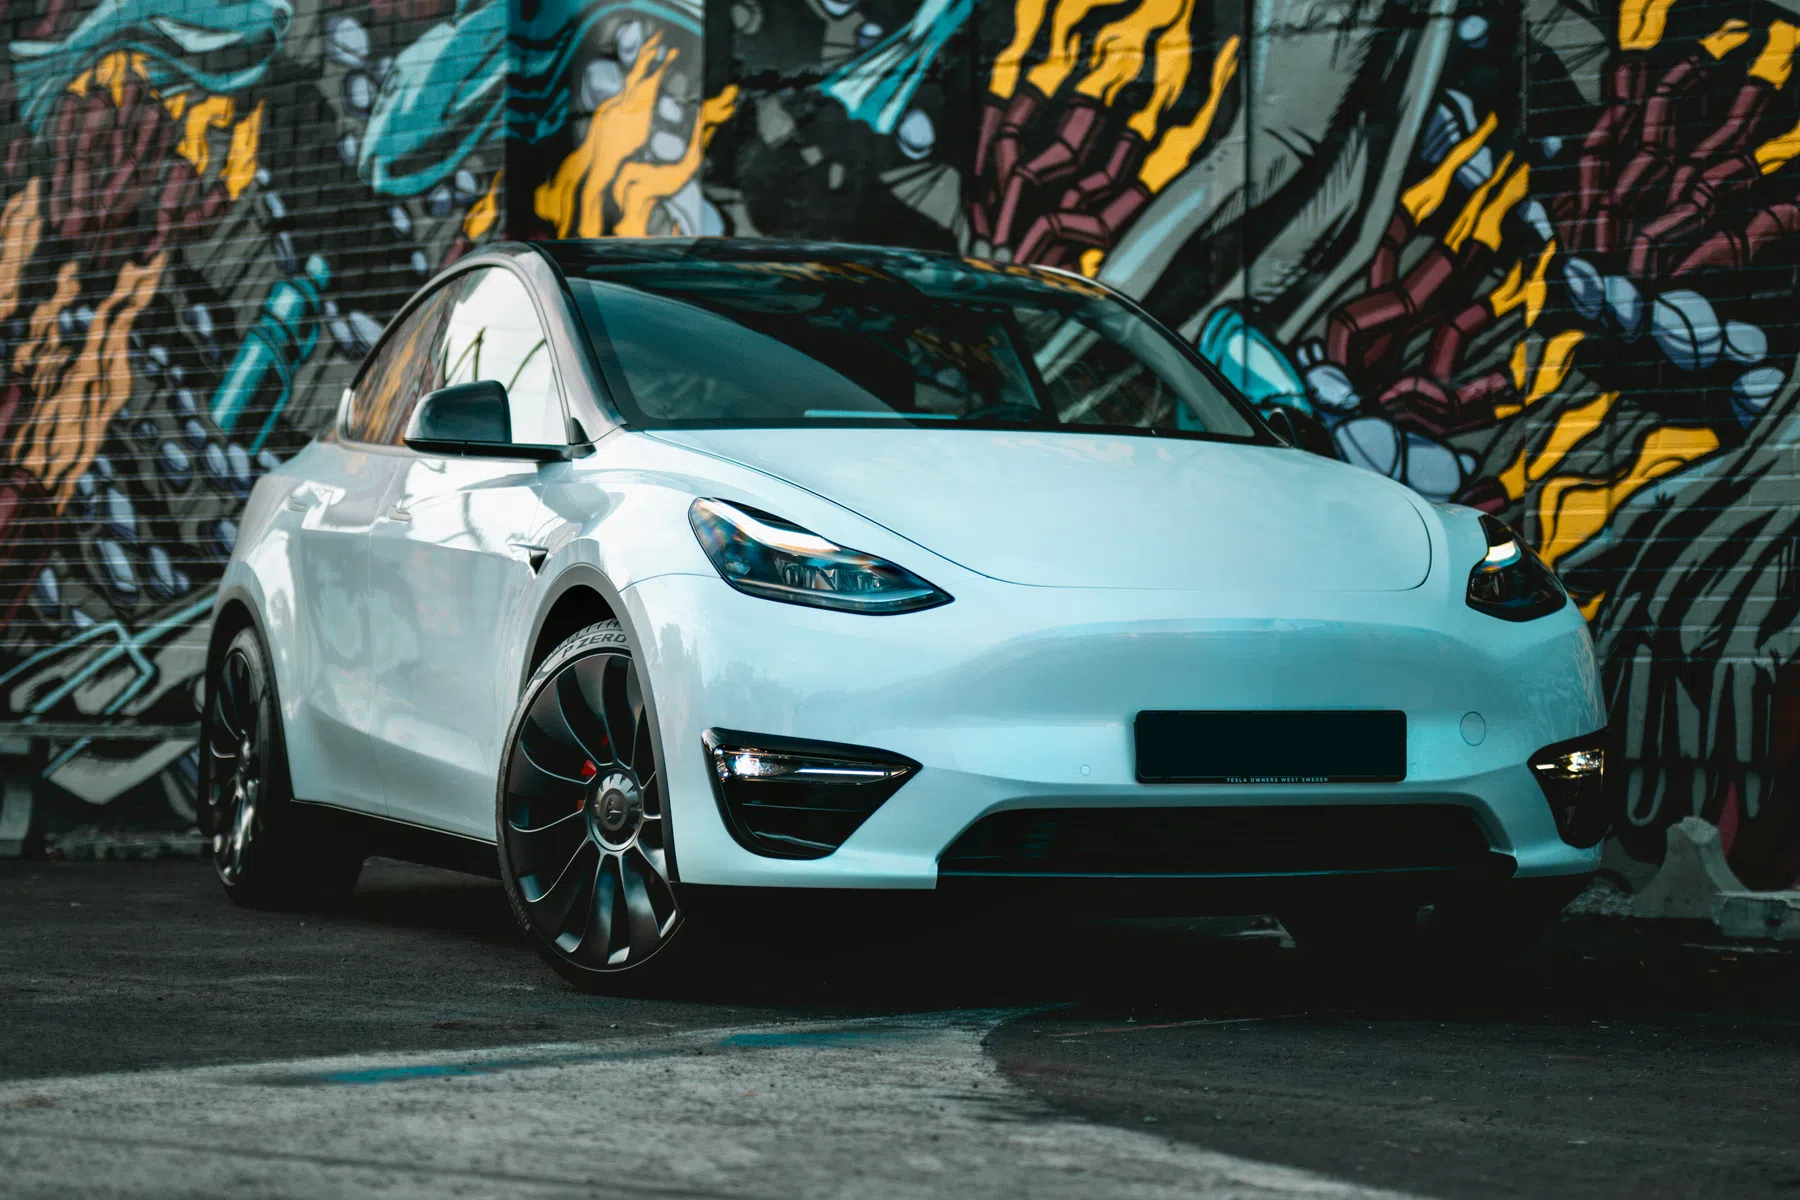 Tesla roept 2,1 miljoen auto’s terug om grootte van lettertjes